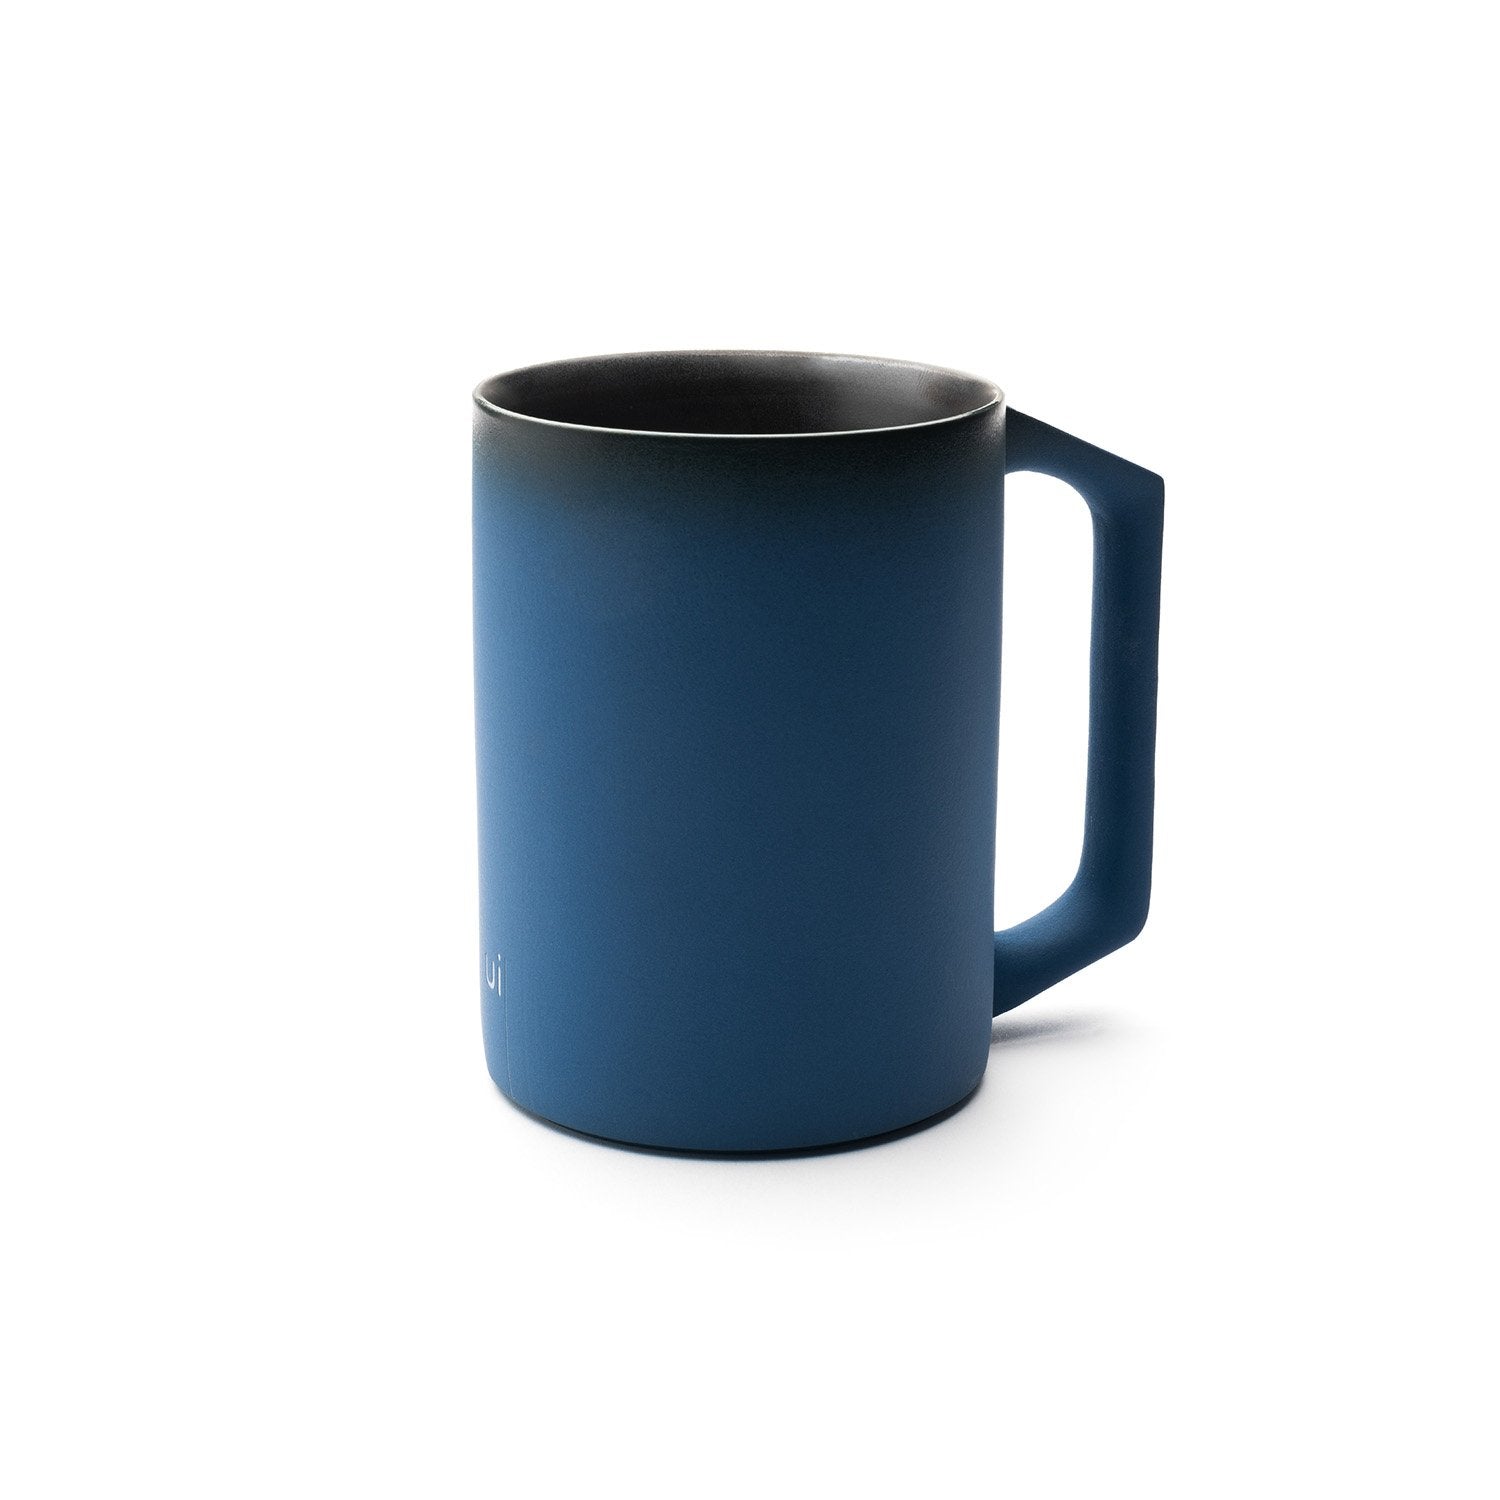 Blue mug with design